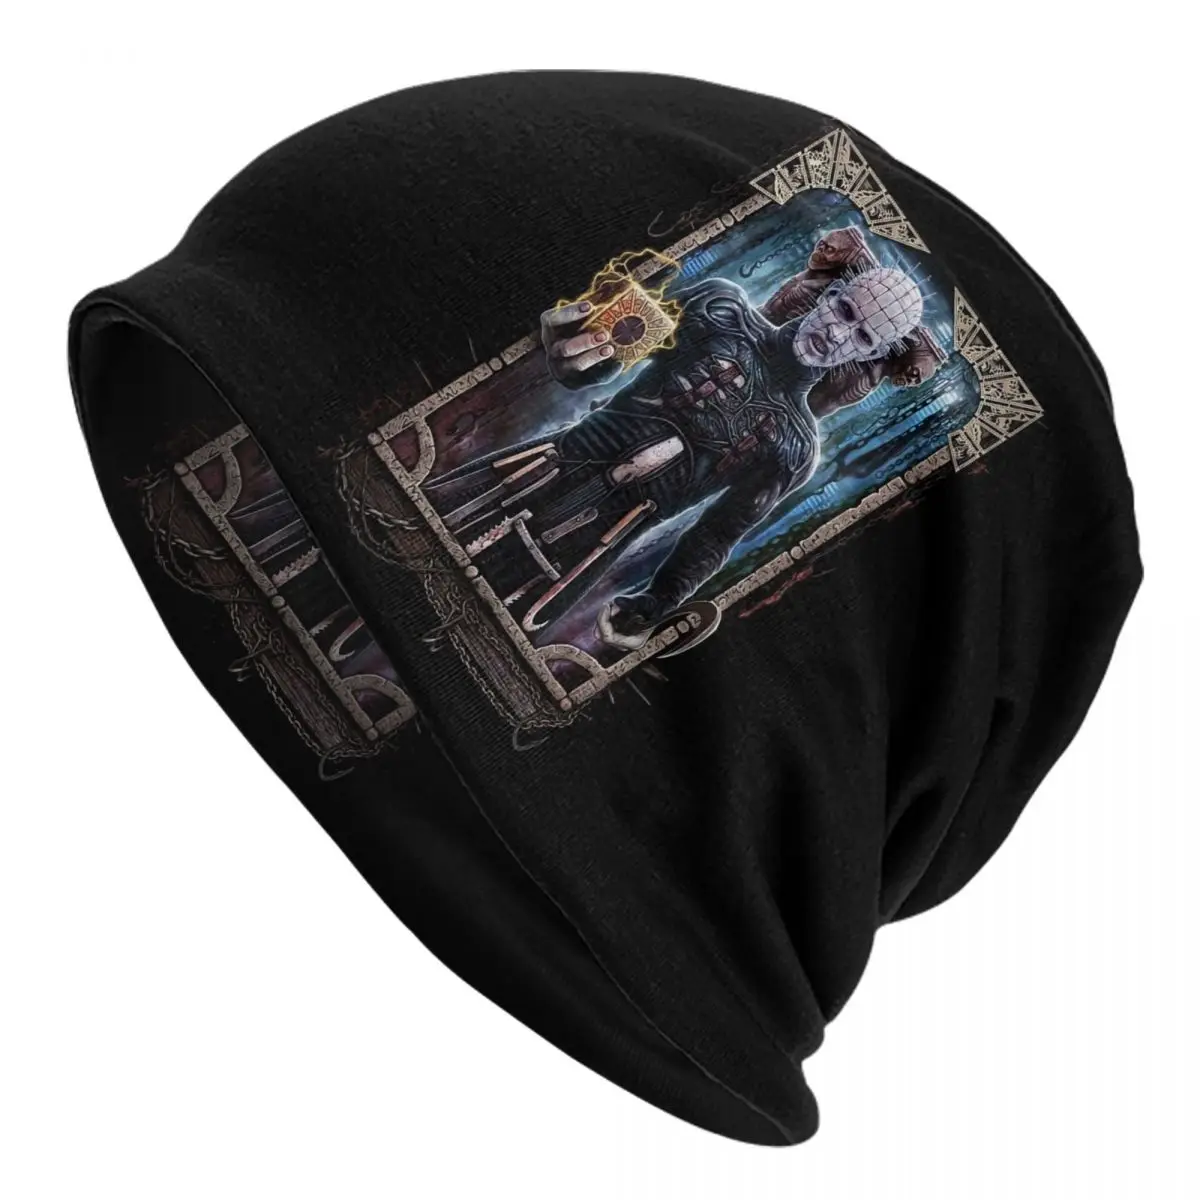 

Hellraiser Bonnet Hats Hip Hop Knit Hat For Men Women Warm Winter Halloween Horror Movie Skullies Beanies Caps